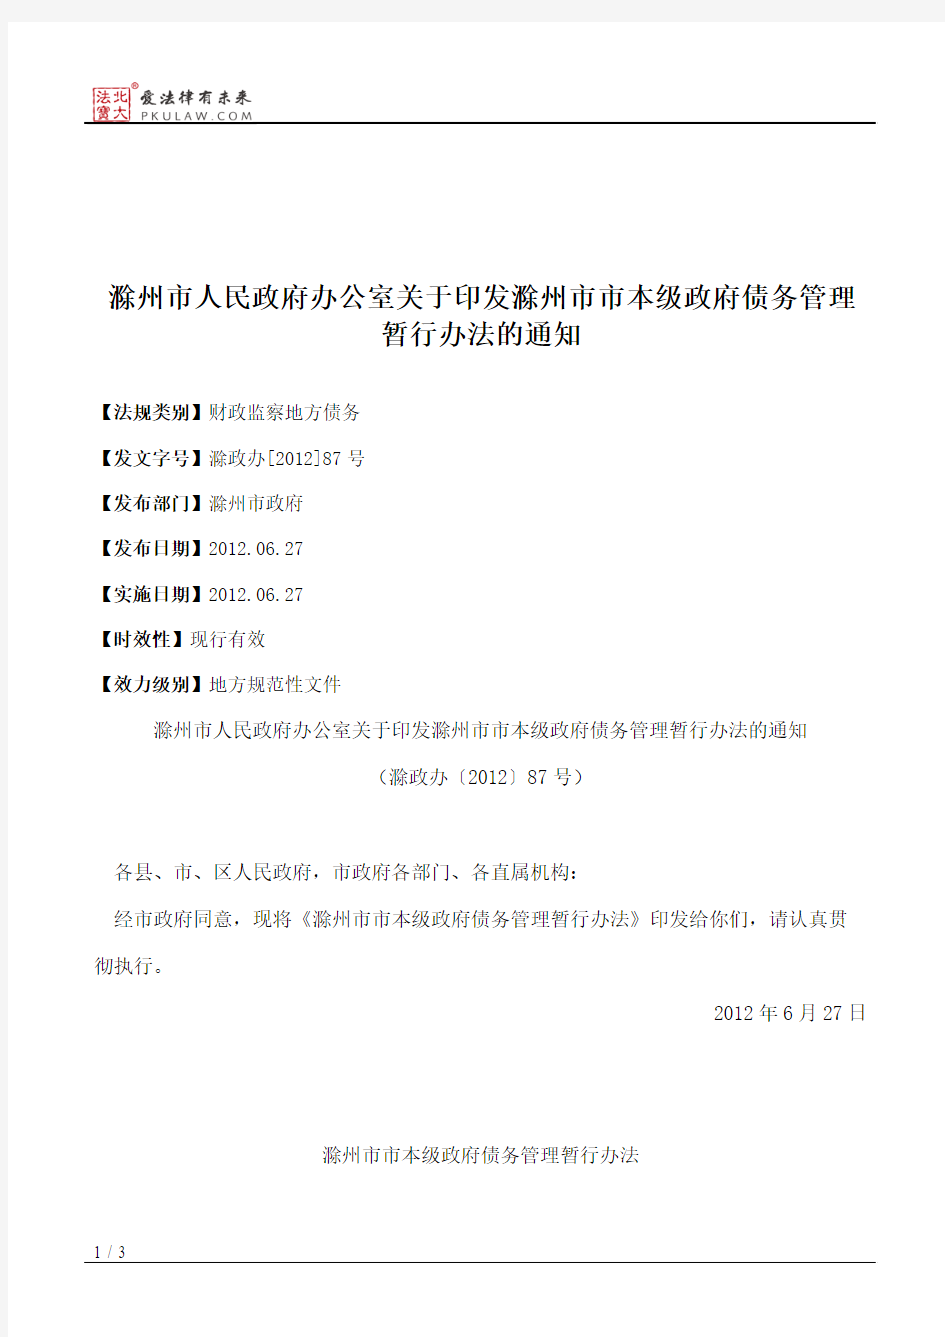 滁州市人民政府办公室关于印发滁州市市本级政府债务管理暂行办法的通知